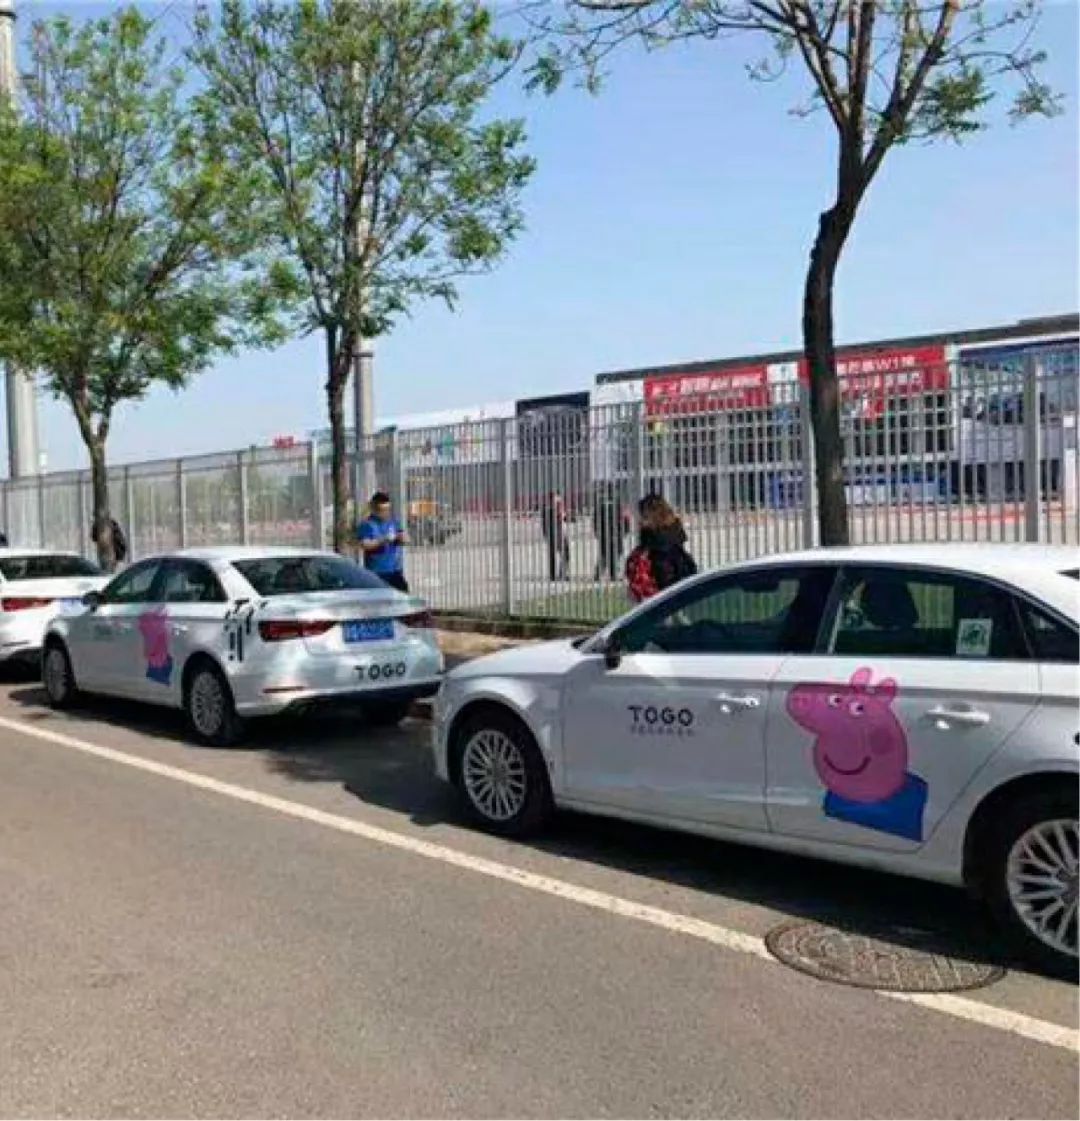 小猪佩奇：用实力征服北京车展？ | GQ Autoshow Daily 